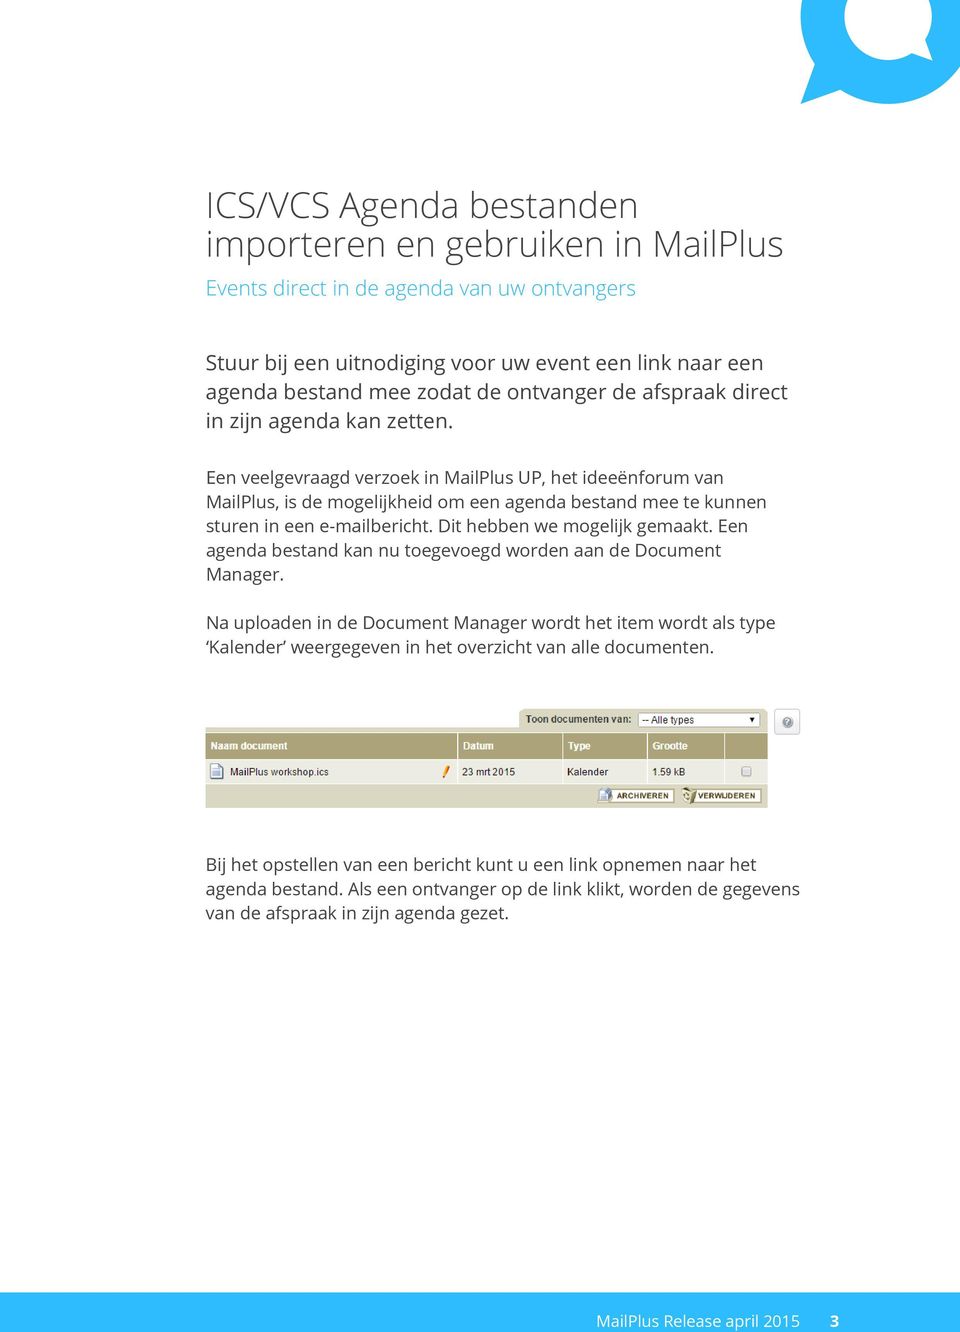 Een veelgevraagd verzoek in MailPlus UP, het ideeënforum van MailPlus, is de mogelijkheid om een agenda bestand mee te kunnen sturen in een e-mailbericht. Dit hebben we mogelijk gemaakt.